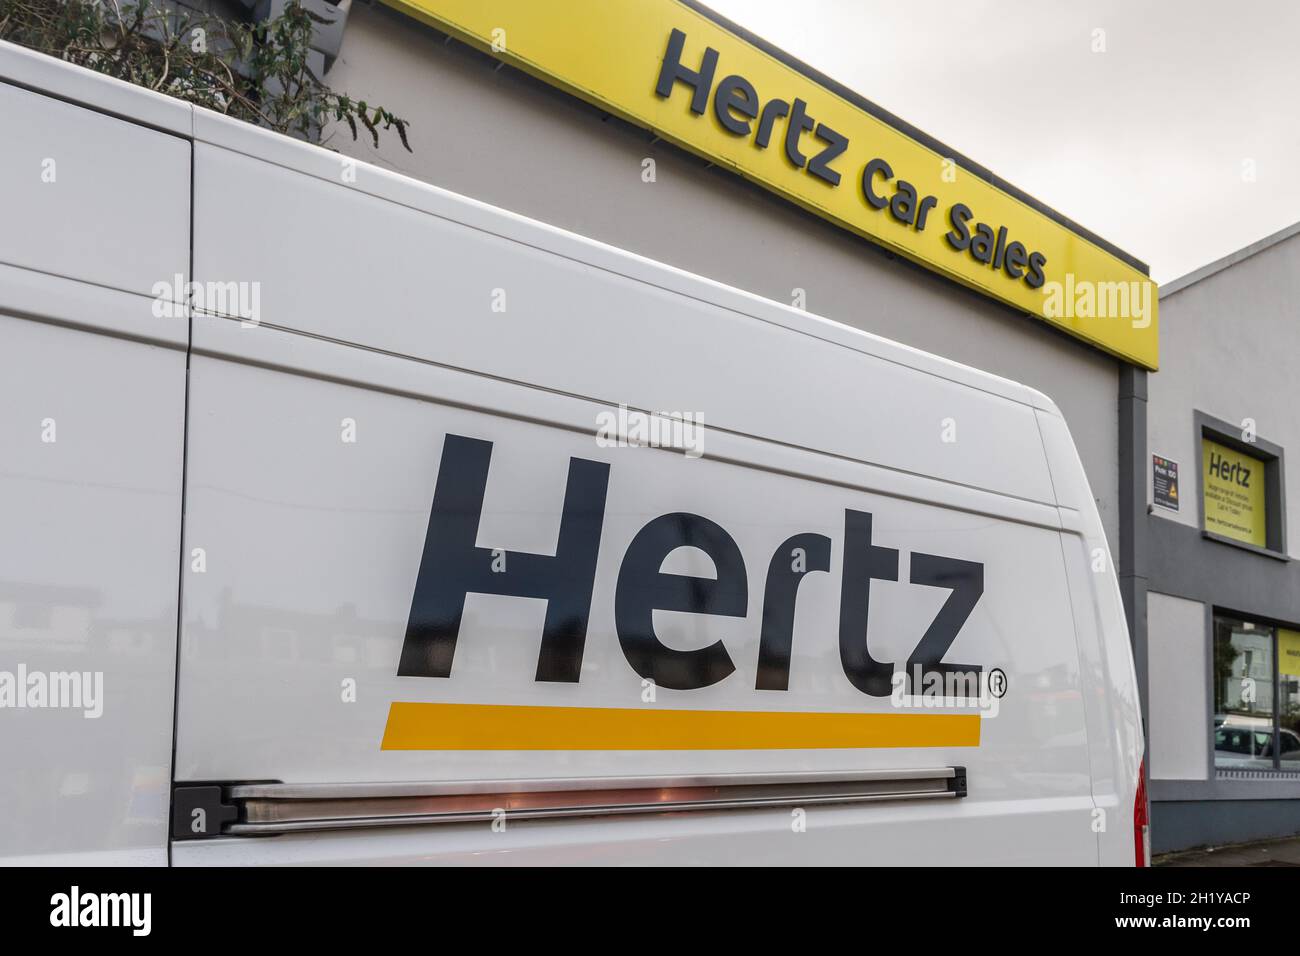 Logo Hertz sur le côté d'une fourgonnette à l'extérieur d'une agence de vente de voitures Hertz à Cork, en Irlande. Banque D'Images